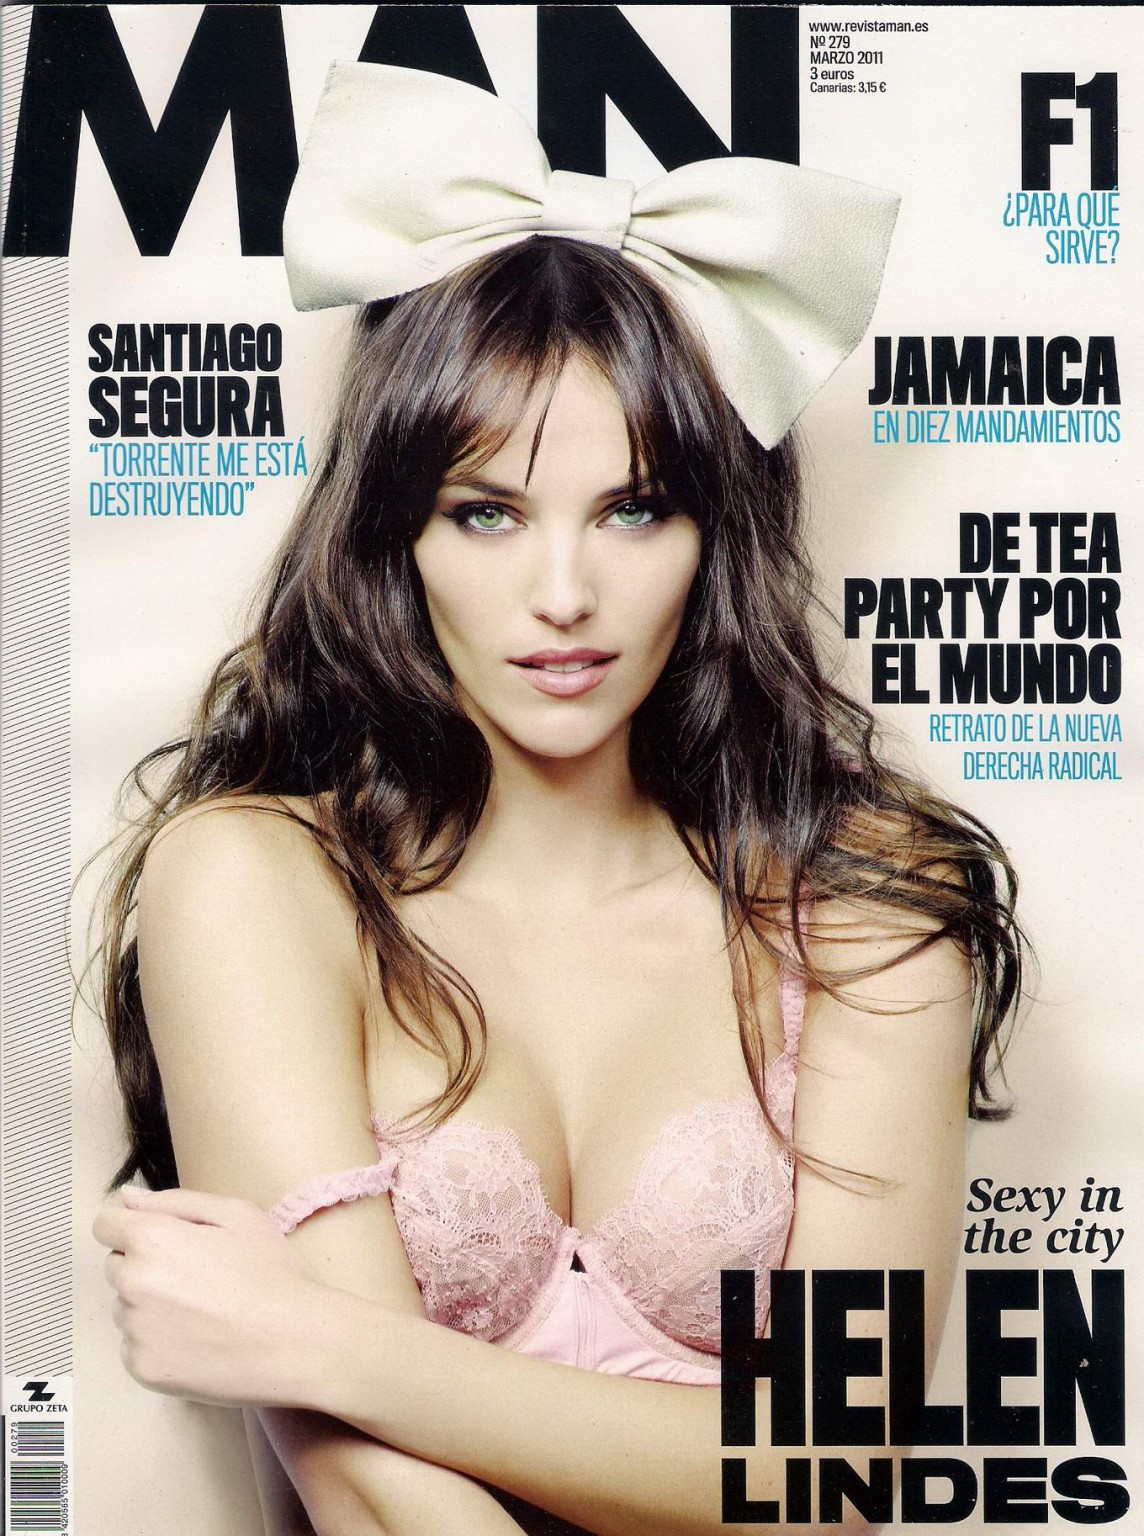 Helen lindes oben ohne, aber versteckt ihre Brüste für das spanische man magazine
 #75314577